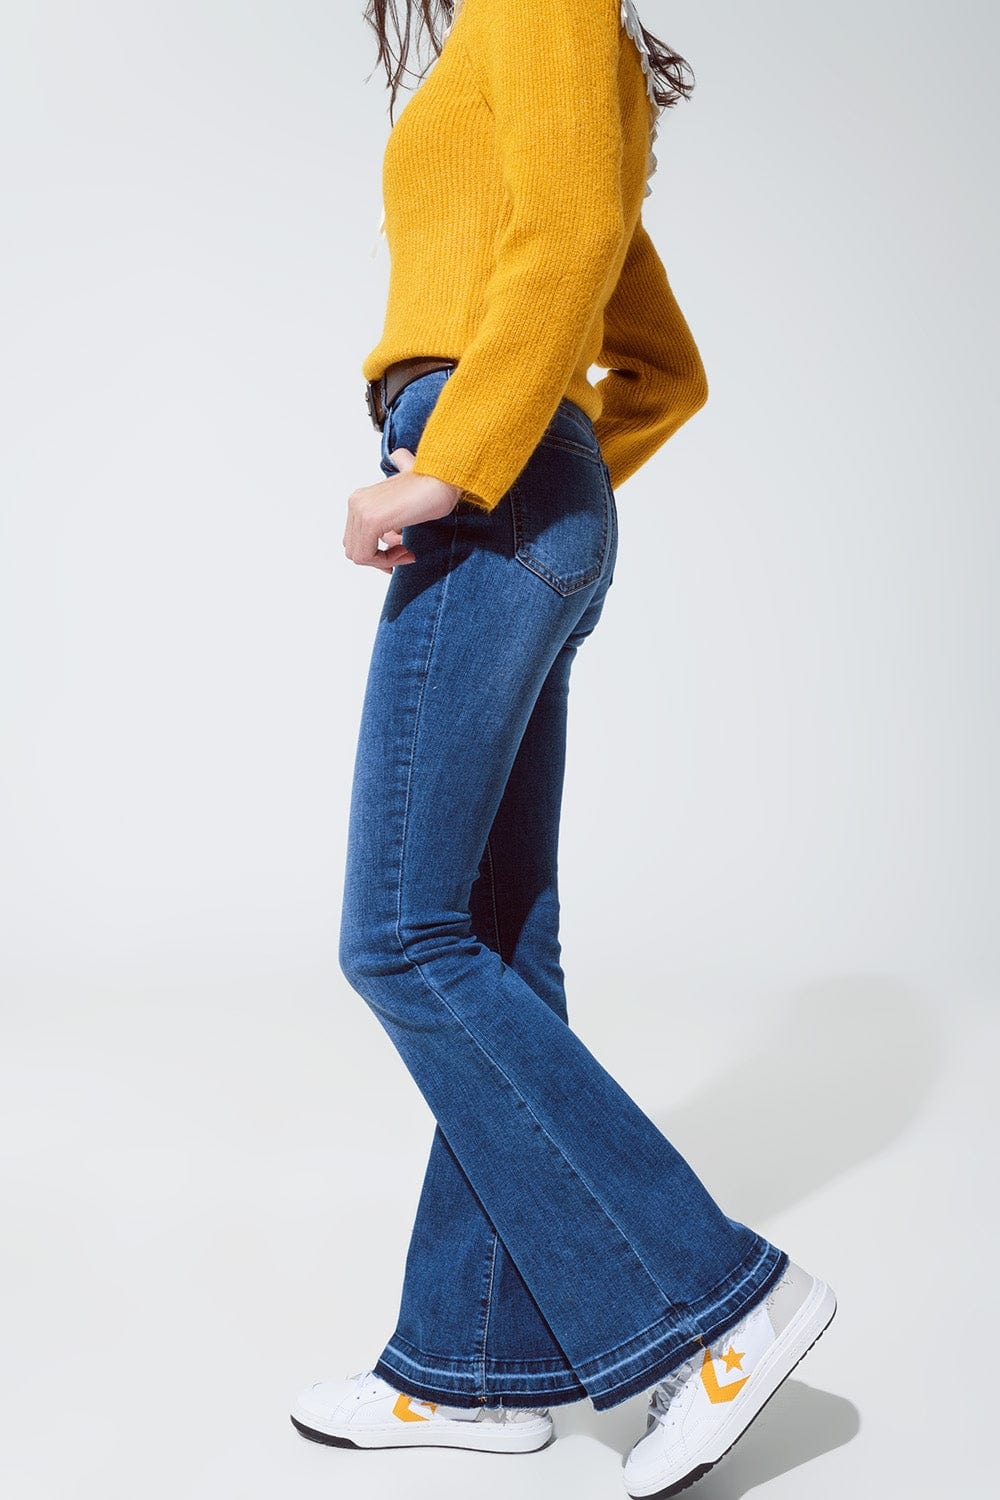 Q2 Women's Jean Medium Blue Skinny Flared Jeans